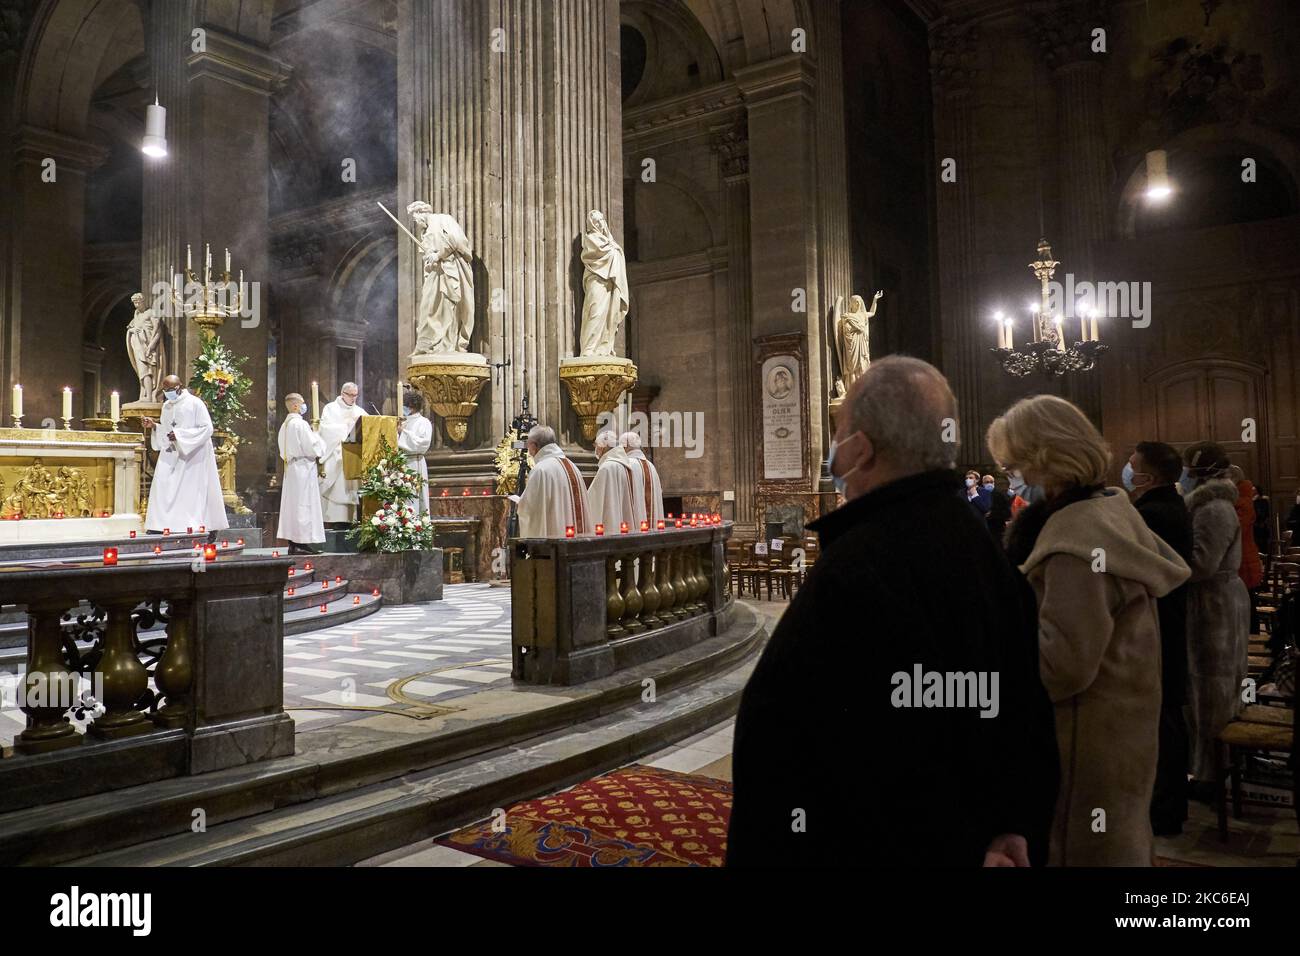 Les gens assistent à la messe de minuit à l'église Saint-Sulpice à Paris sur 24 décembre 2020, malgré la pandémie Covid-19. La Messe de minuit est la messe traditionnelle des catholiques qui précède le jour de Noël, la veille de Noël. (Photo par Adnan Farzat/NurPhoto) Banque D'Images